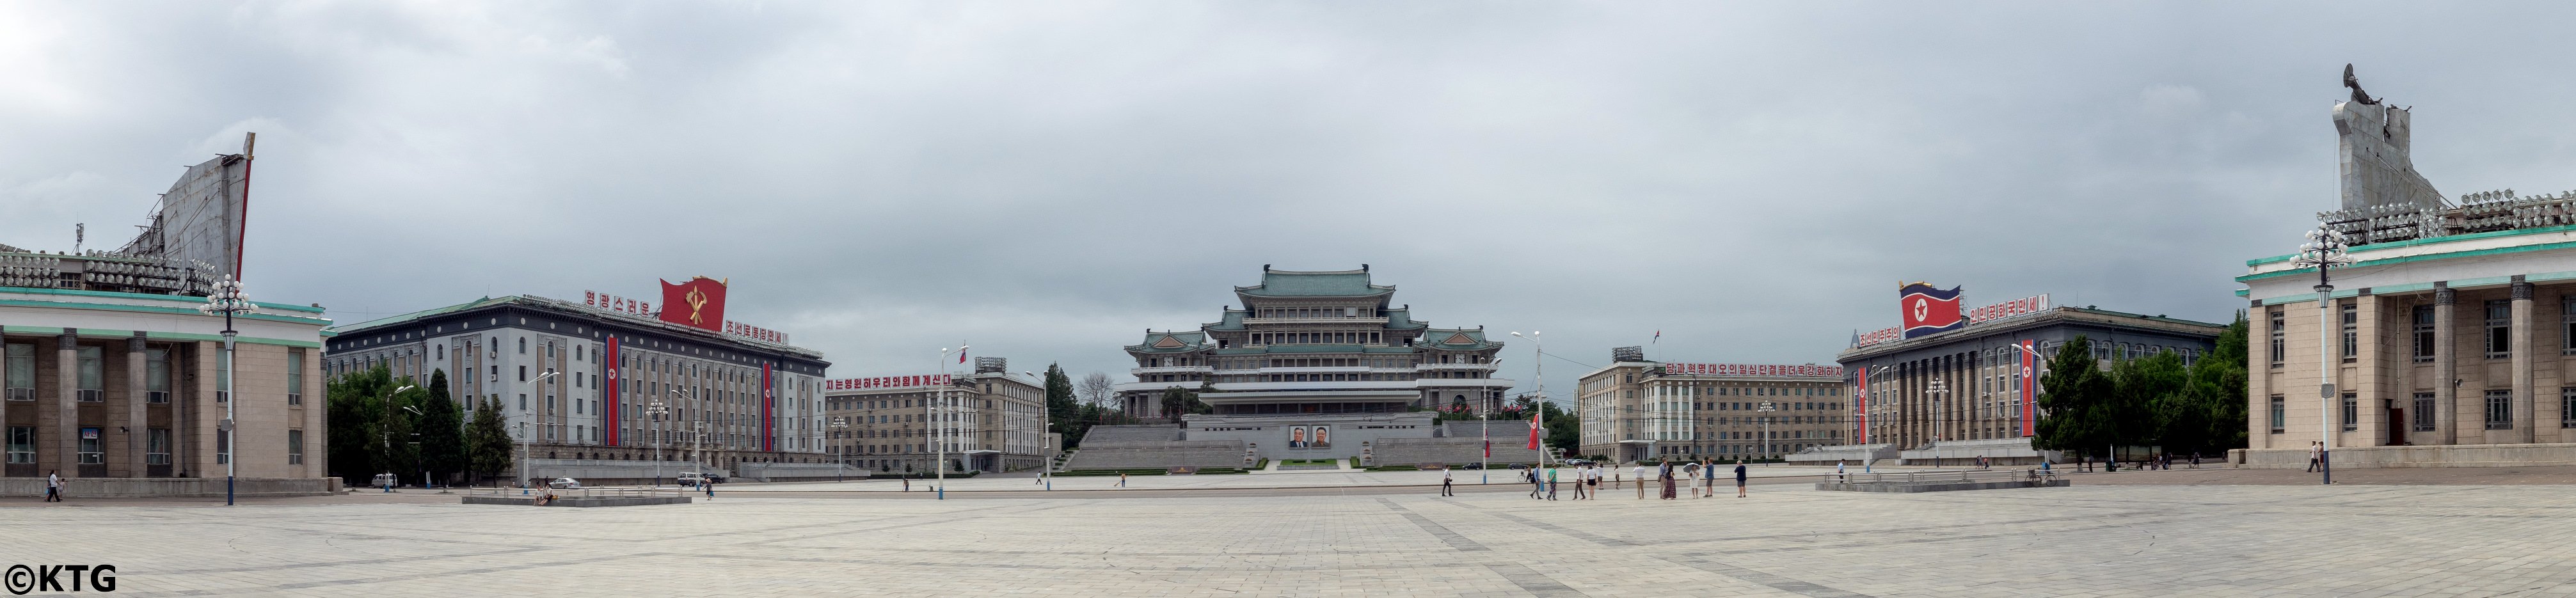 Photo panoramique de la Place Kim Il Sung en Corée du Nord. Photo prise par KTG Tours